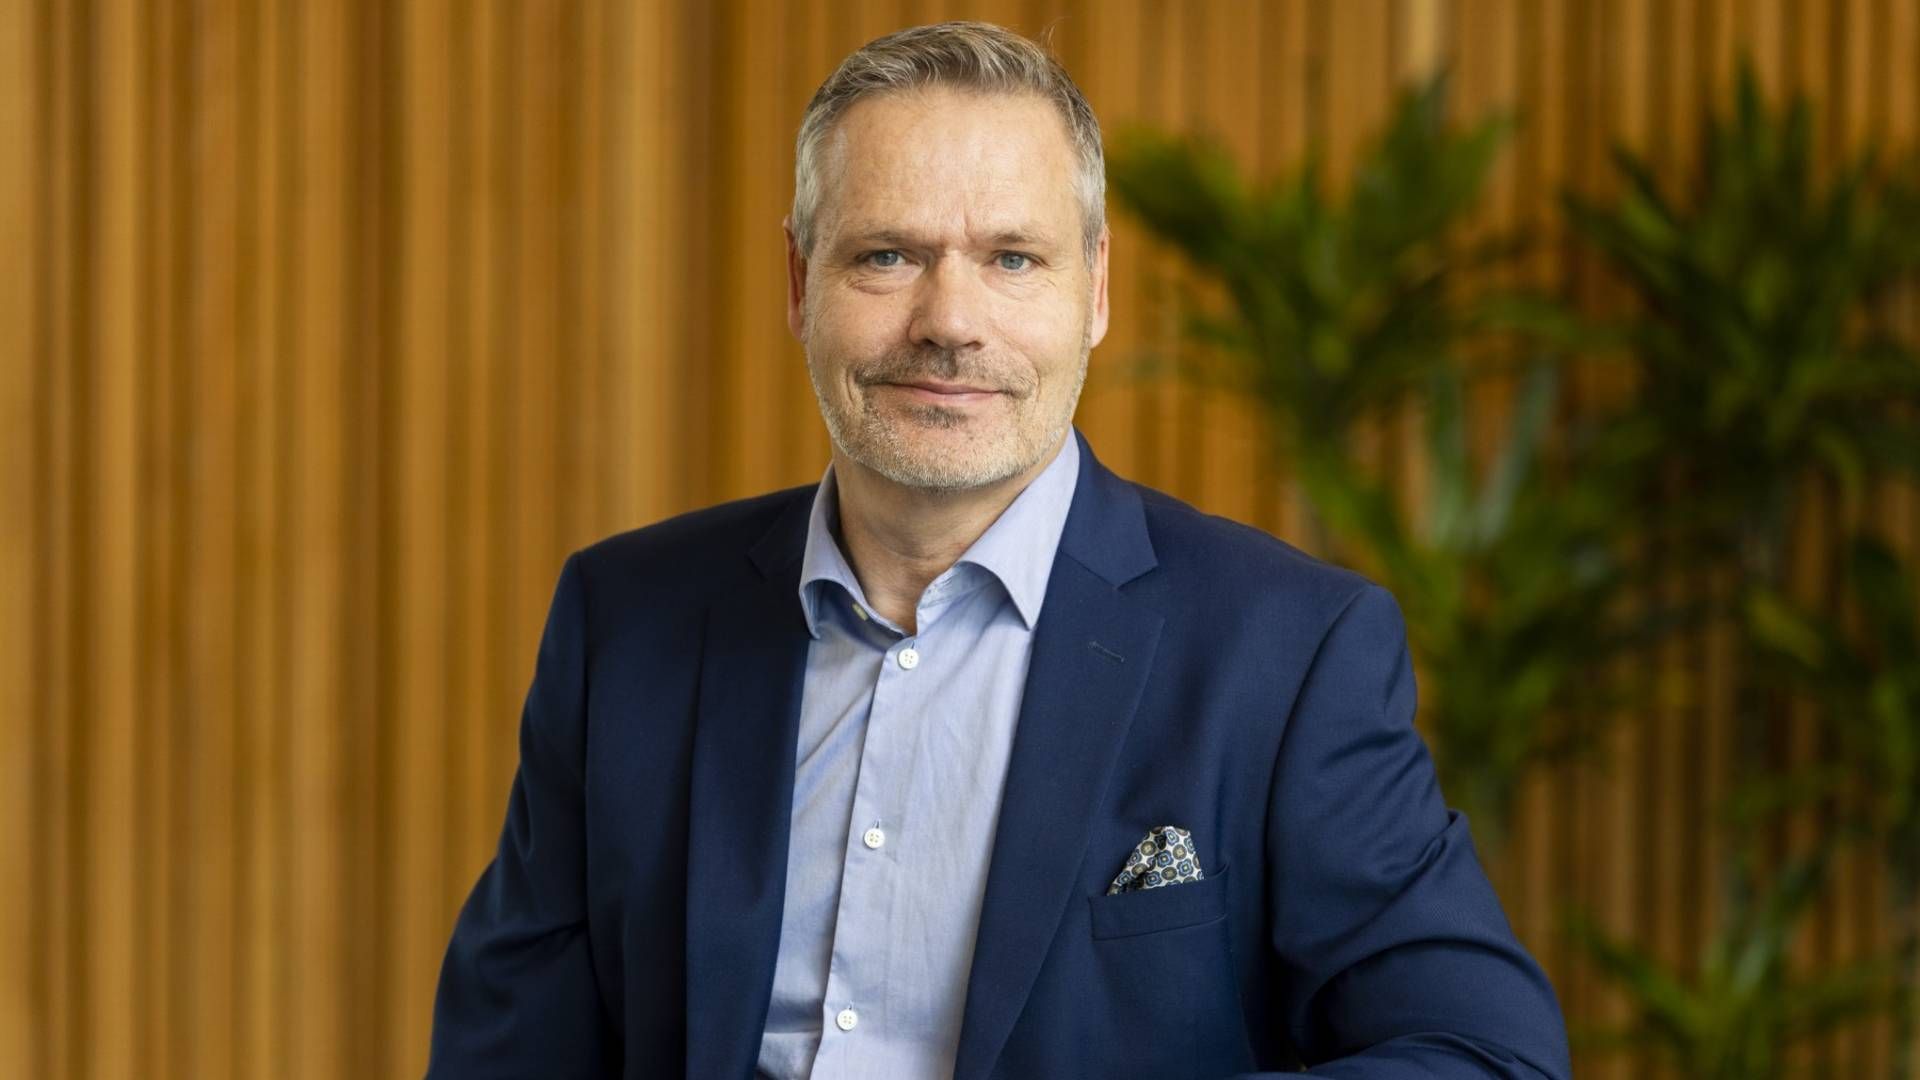 KREVENDE KVARTAL: Hans Olav Høiby, konstituert administrerende direktør i Eika Forsikring forteller at årets første kvartal har vært krevende for selskapet.